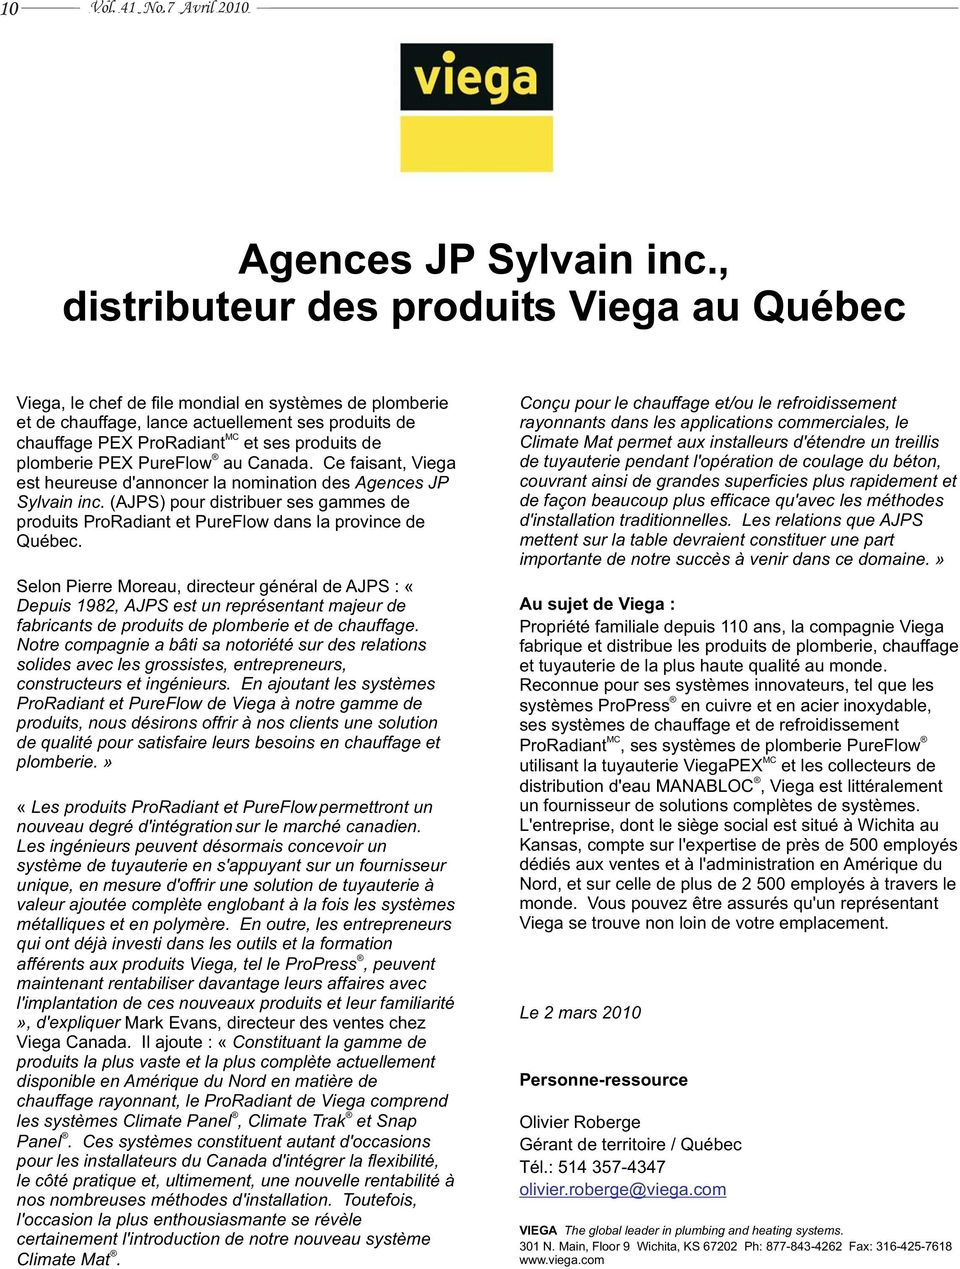 plomberie PEX PureFlow au Canada. Ce faisant, Viega est heureuse d'annoncer la nomination des Agences JP Sylvain inc.